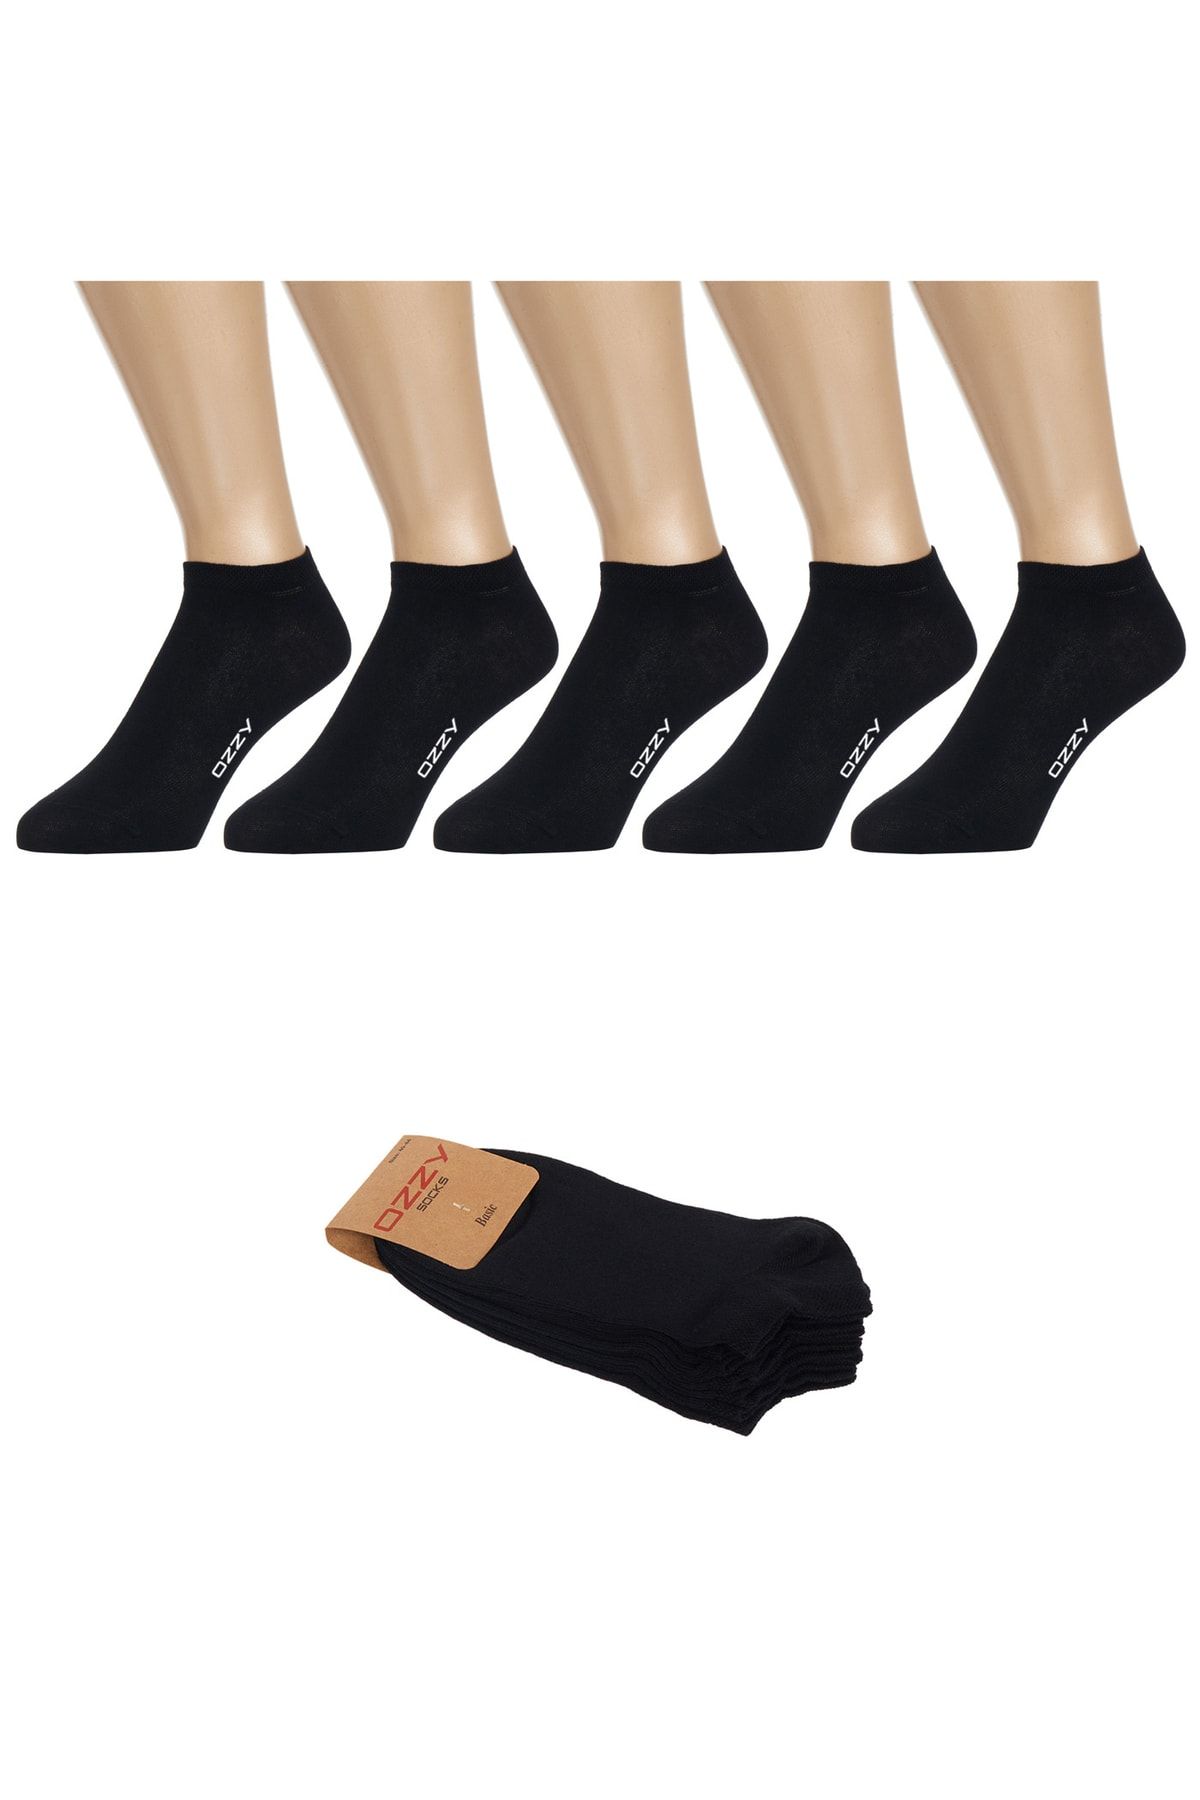 Ozzy Socks 5 Çift Dikişsiz Pamuklu Siyah Patik Çorap Yazlık Dayanıklı Topuk Ve Burun